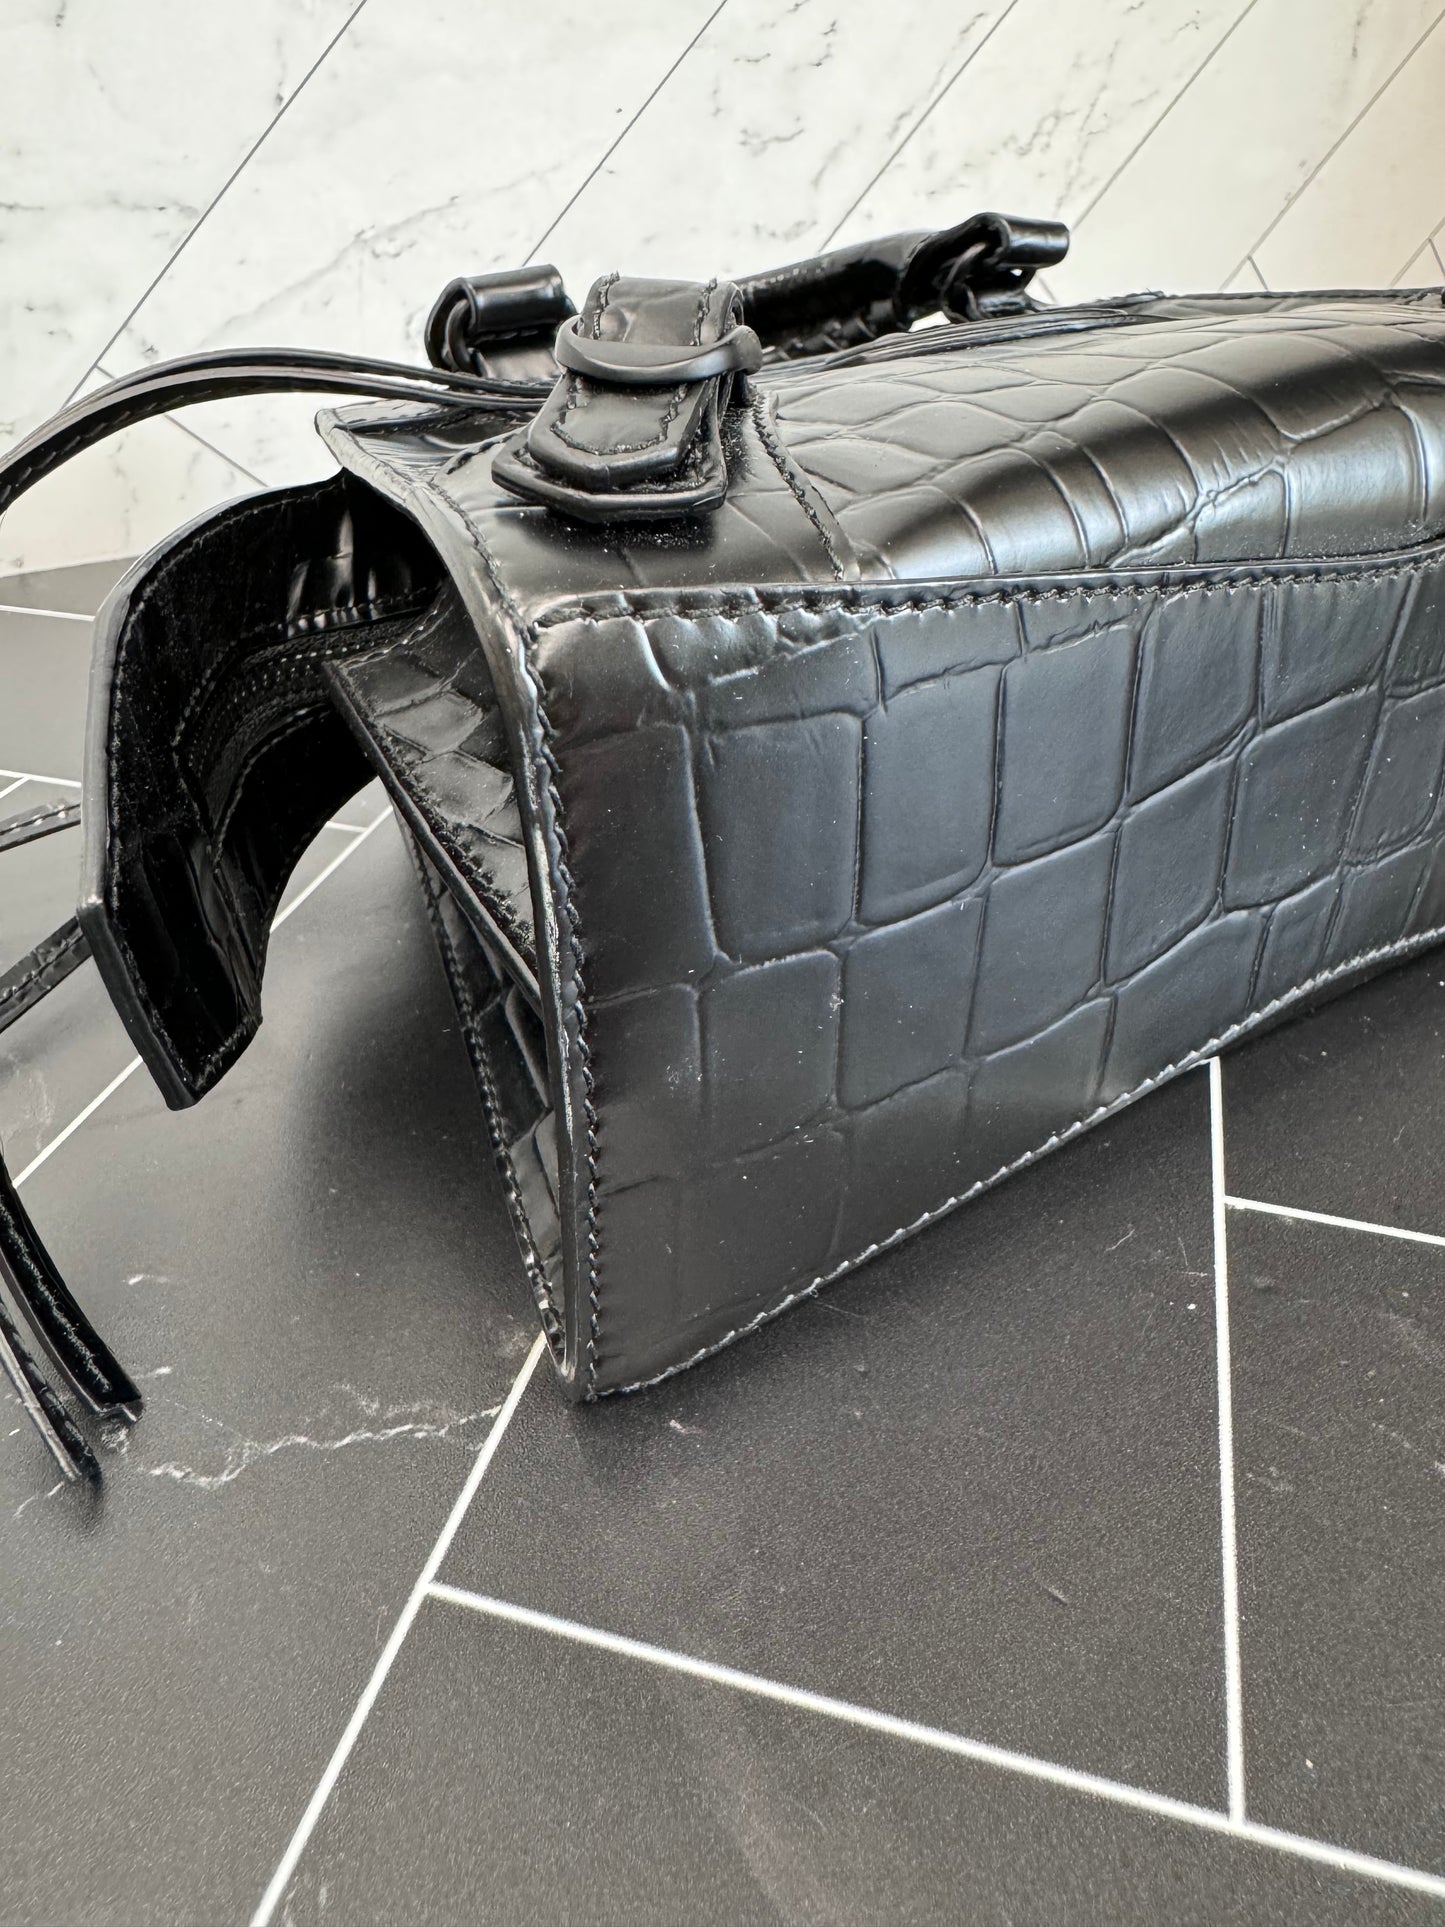 Balenciaga Black Mini Croc 2Way Bag